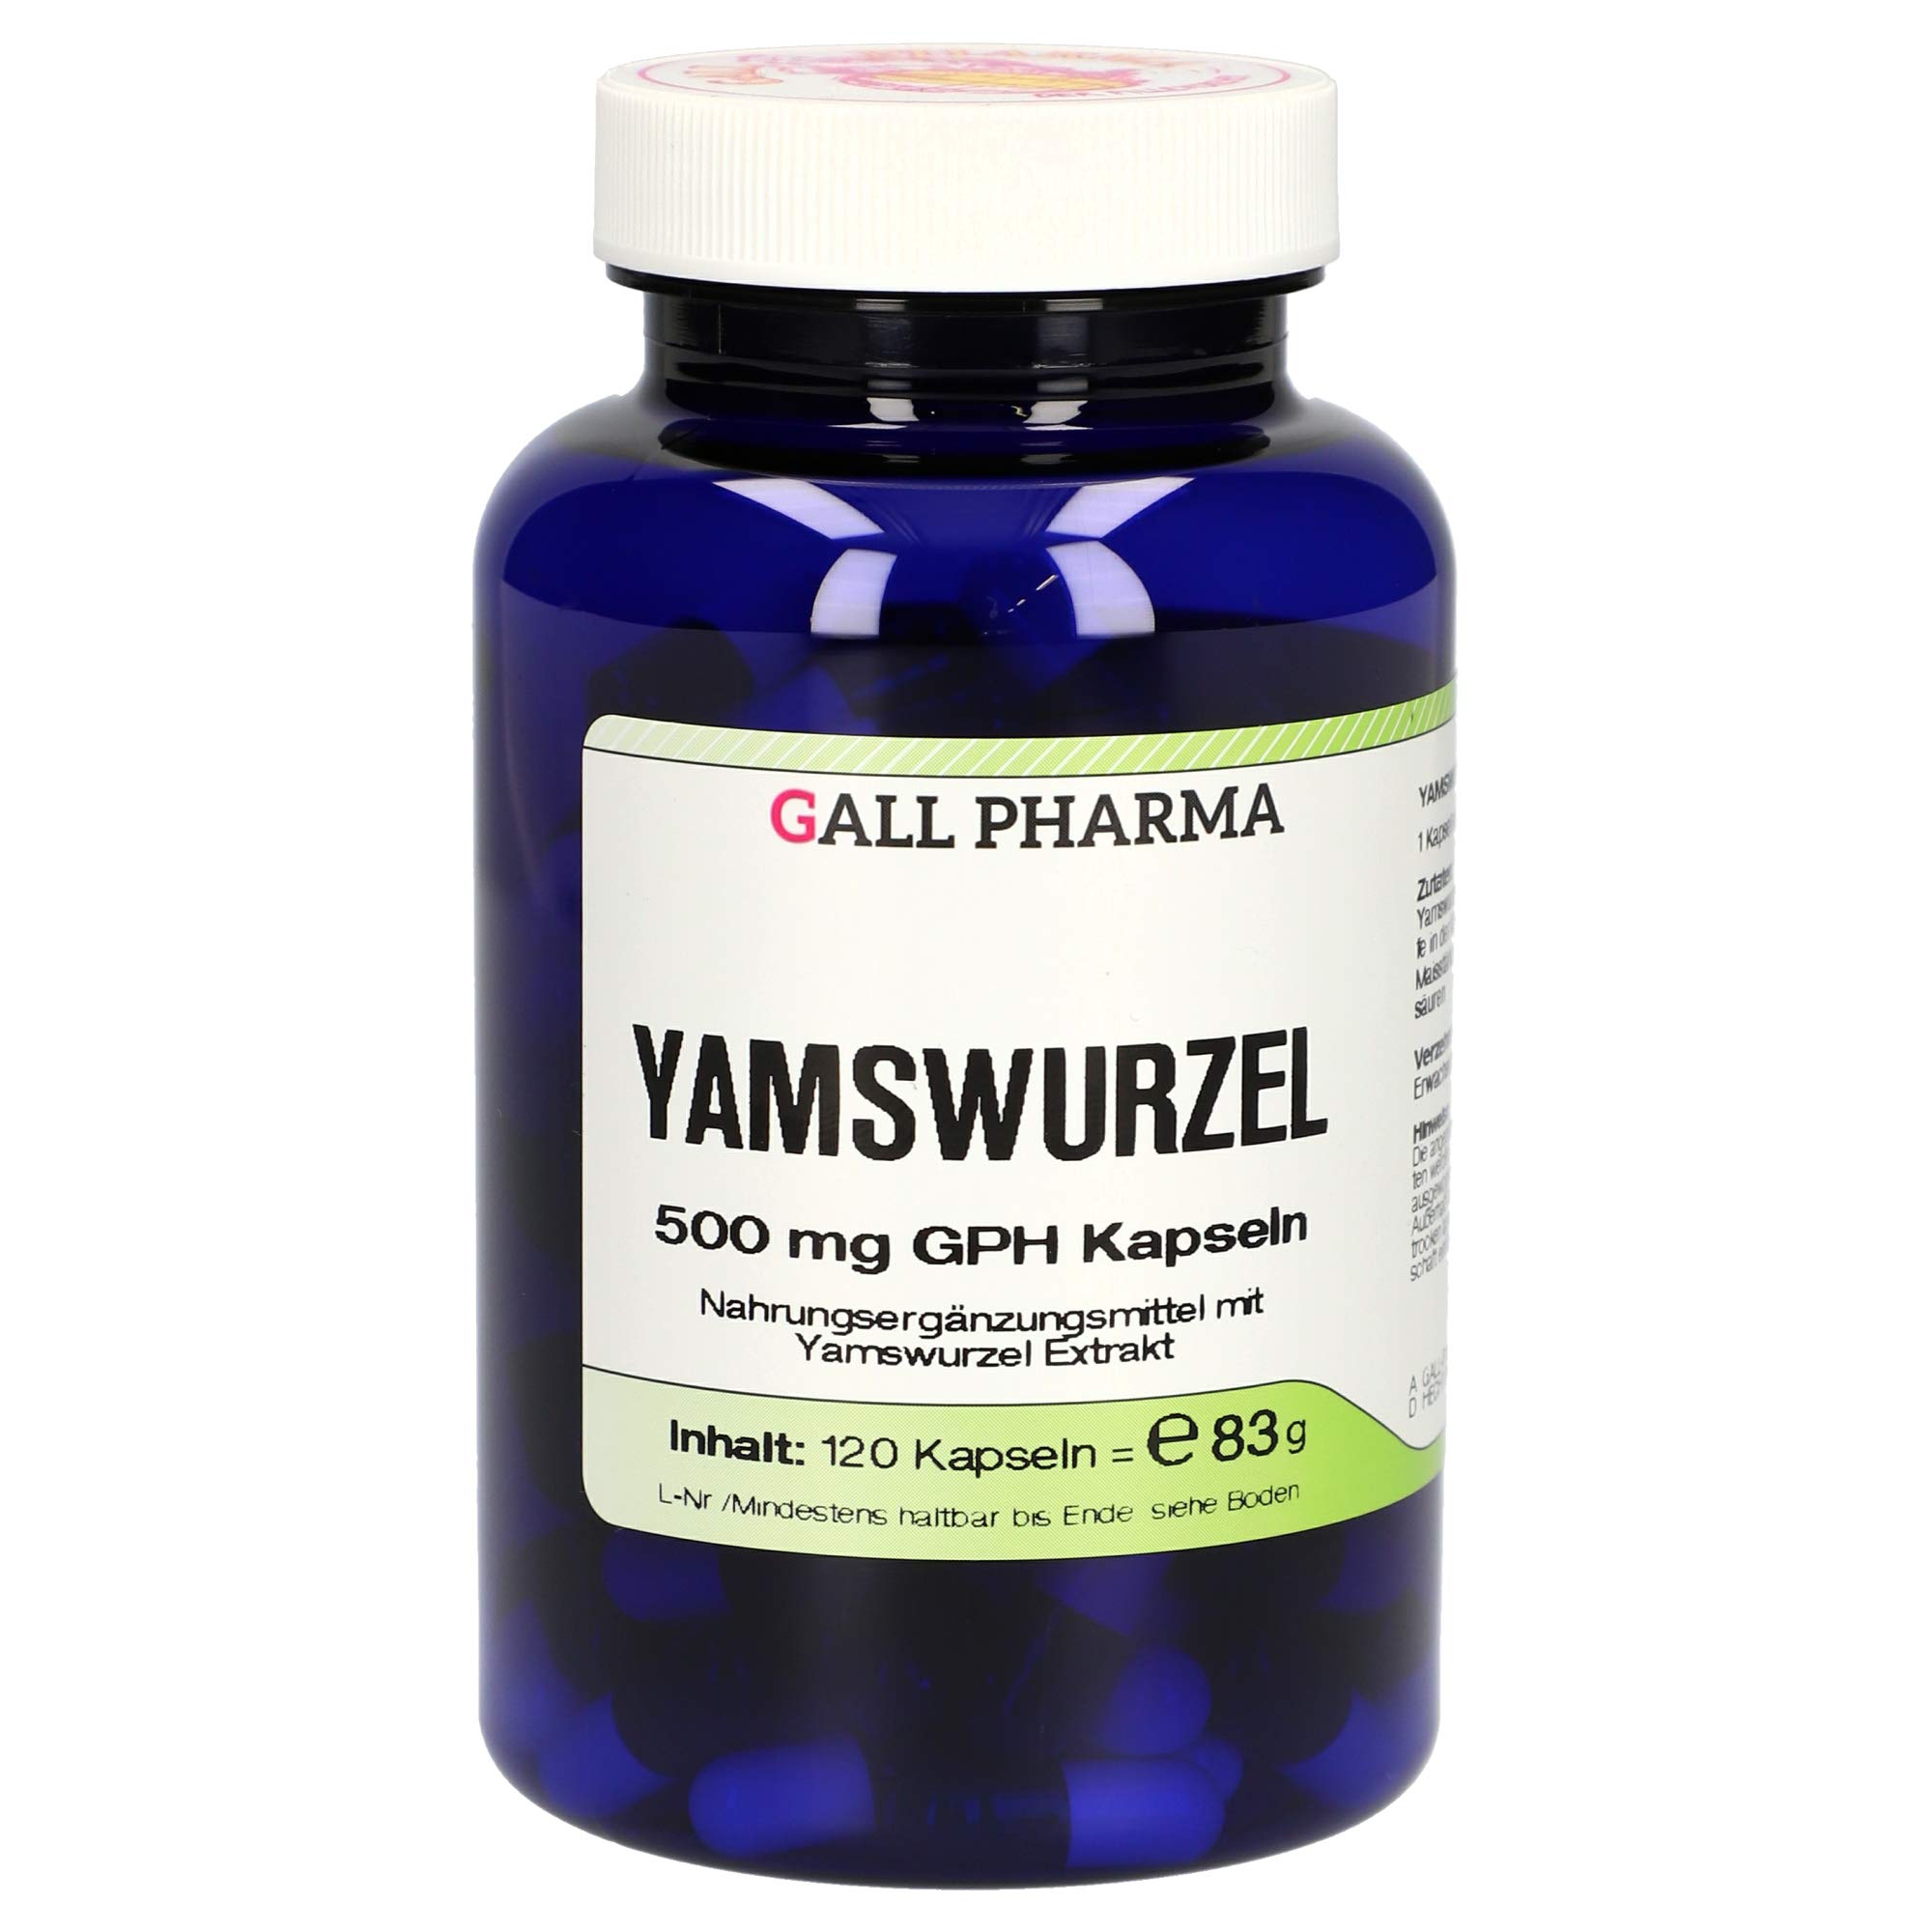 Gall Pharma Yamswurzel 500 mg GPH Kapseln , 1er Pack (1 x 120 Stück)